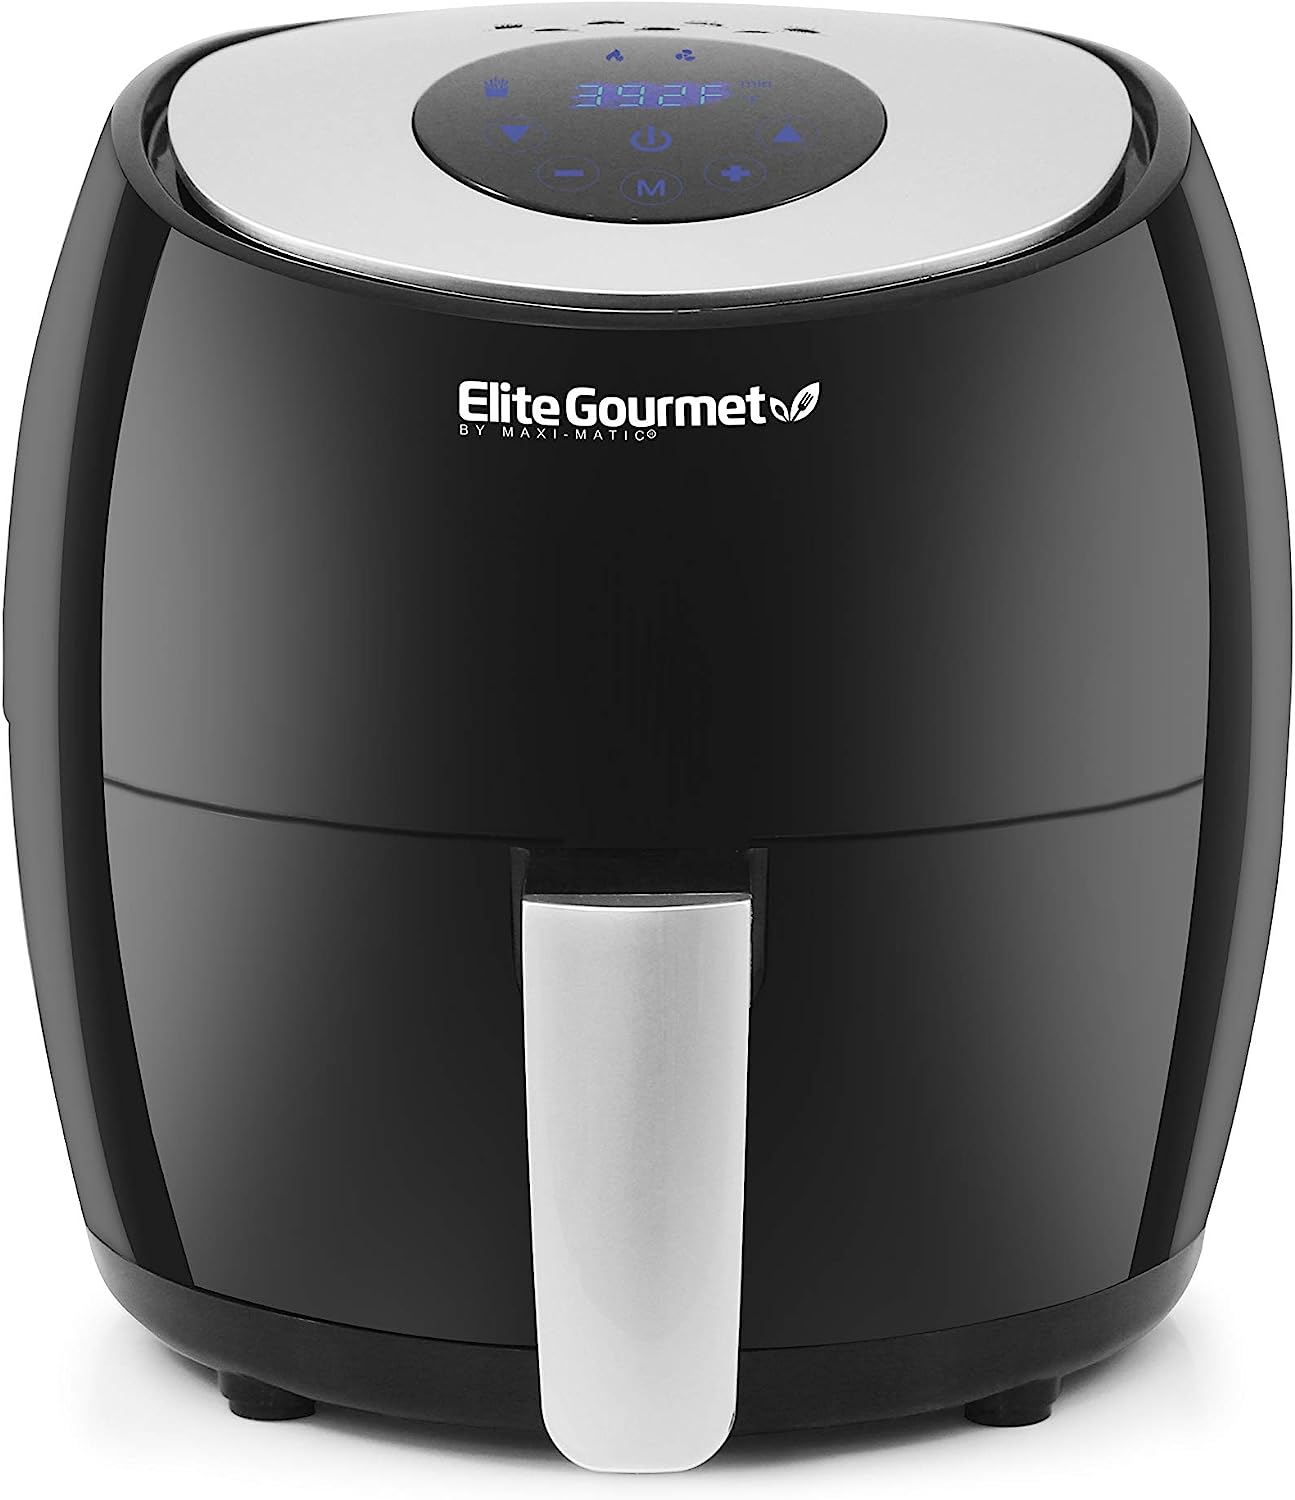 Elite Gourmet Electric Digital Hot Air Fryer with 7 Menu Functions